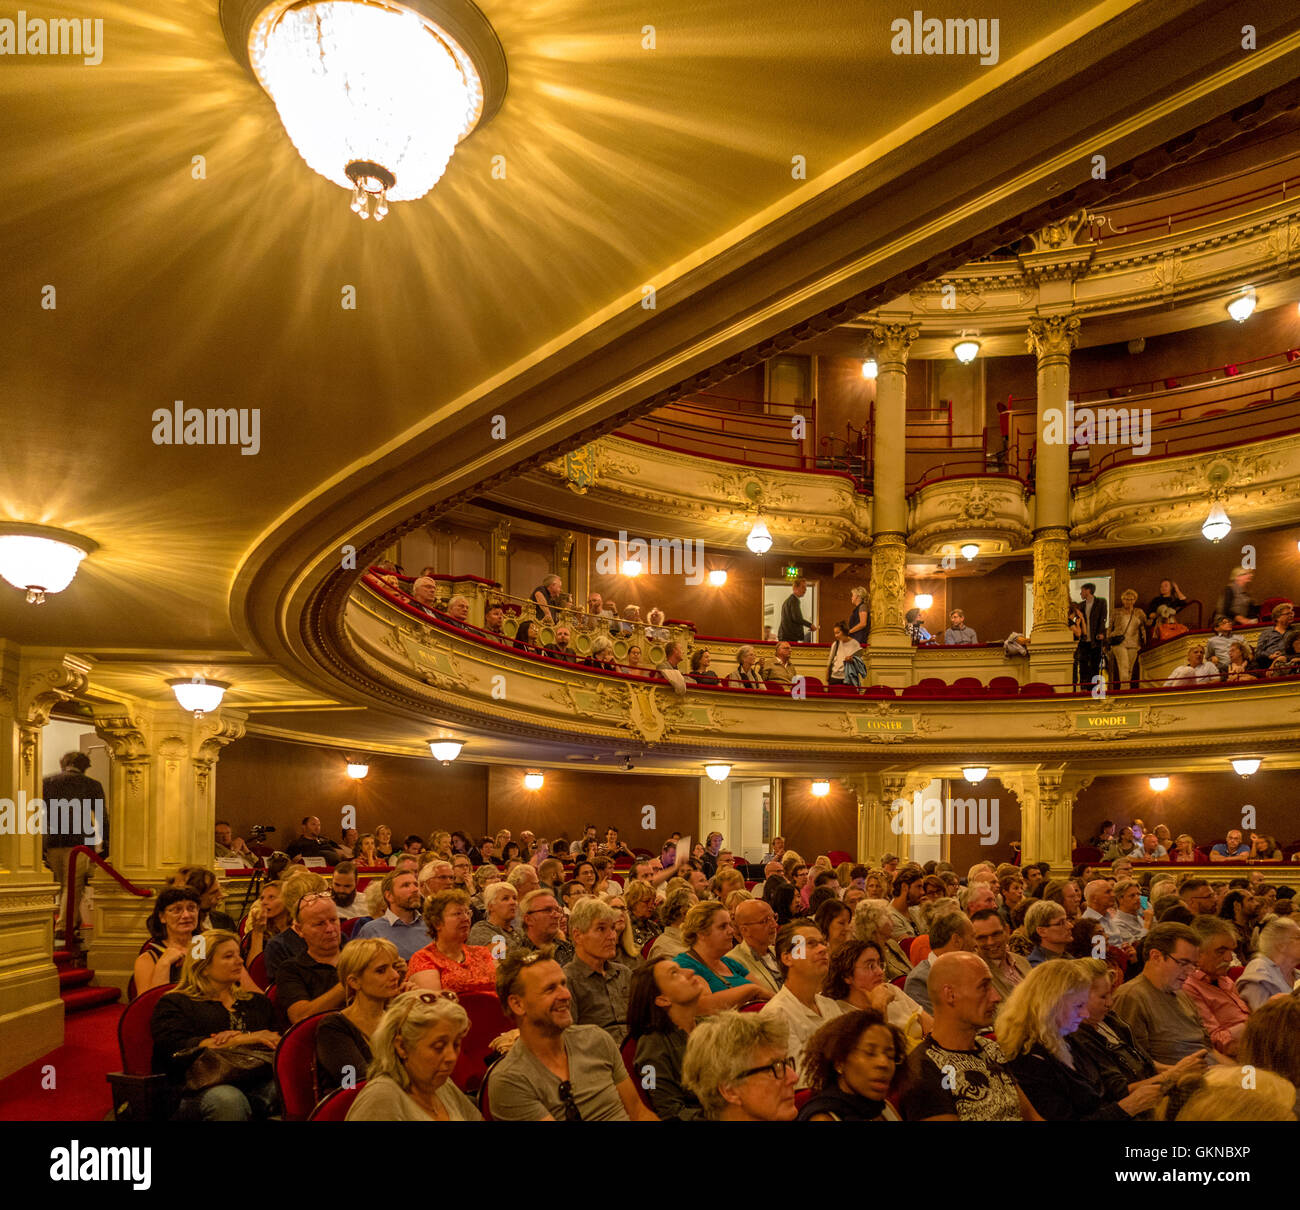 Teatro Municipal de Amsterdam - Neerlandés: Stadsschouwburg - interior con la gente. Foto de stock